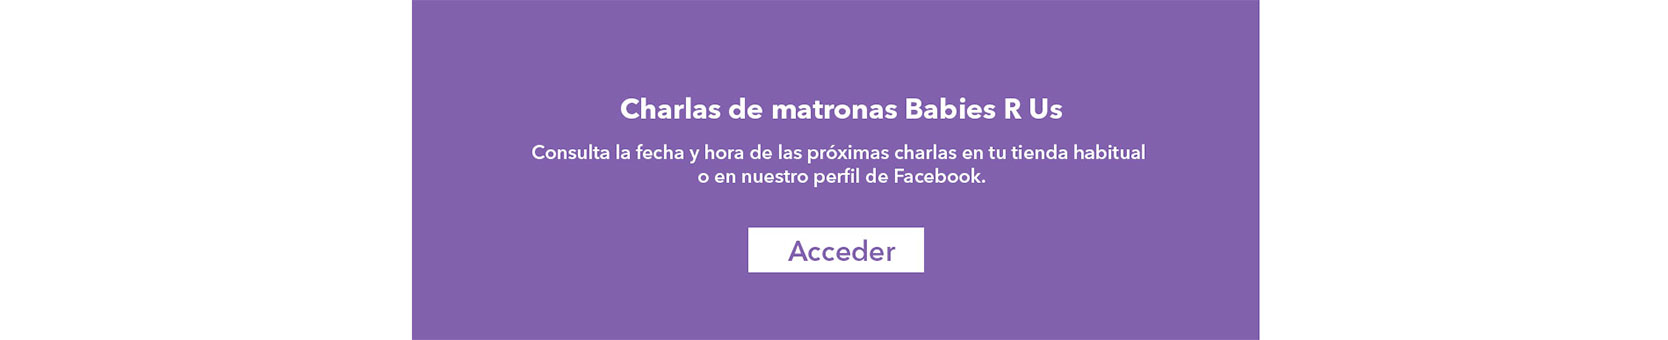 Vuelven las charlas de Matronas Babies